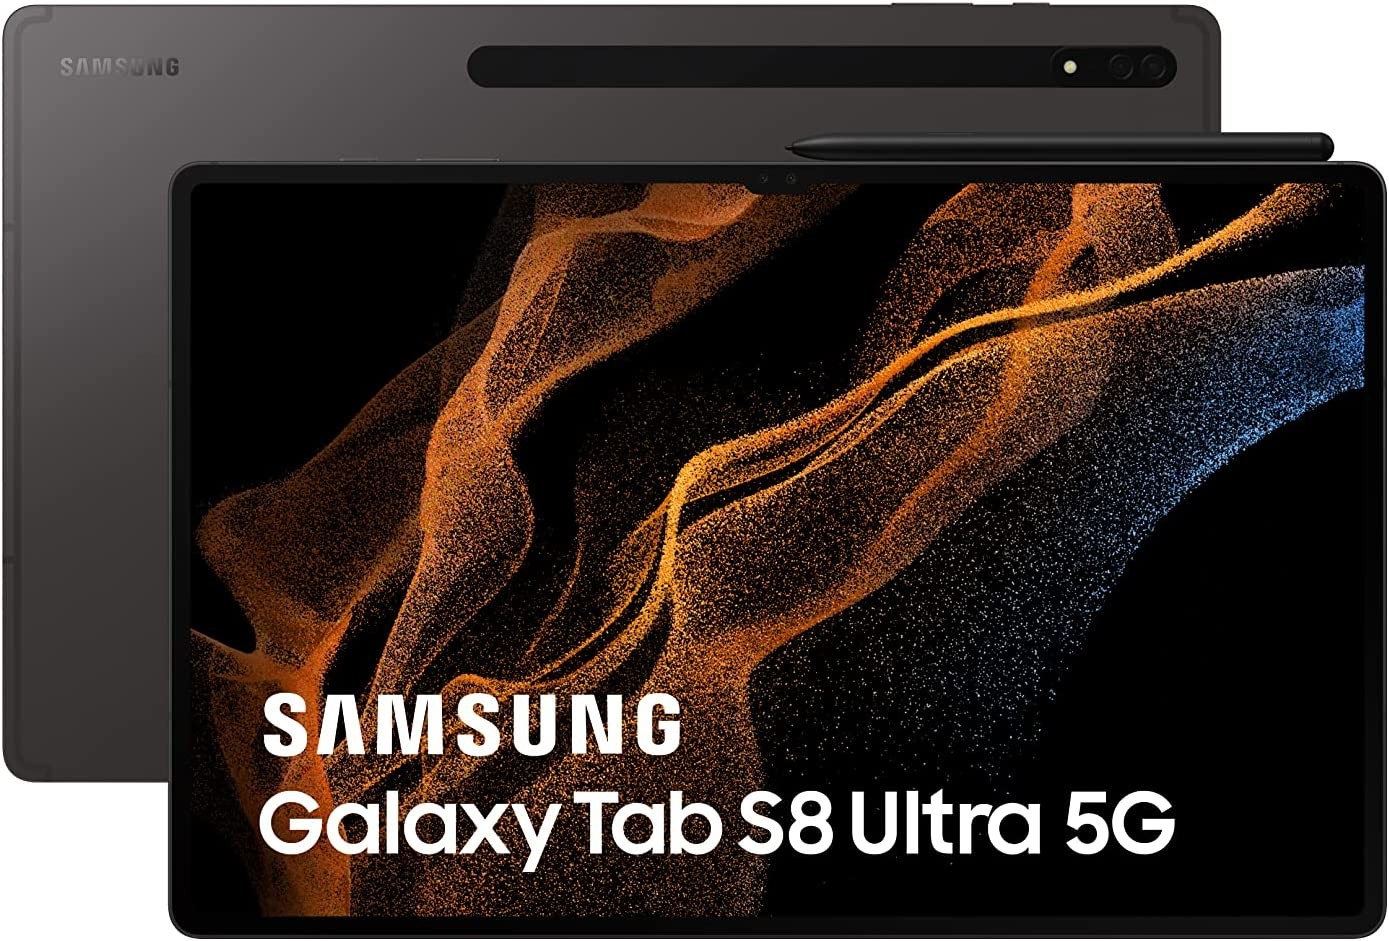 5.Galaxy_Tab_S8_Ultra.jpg